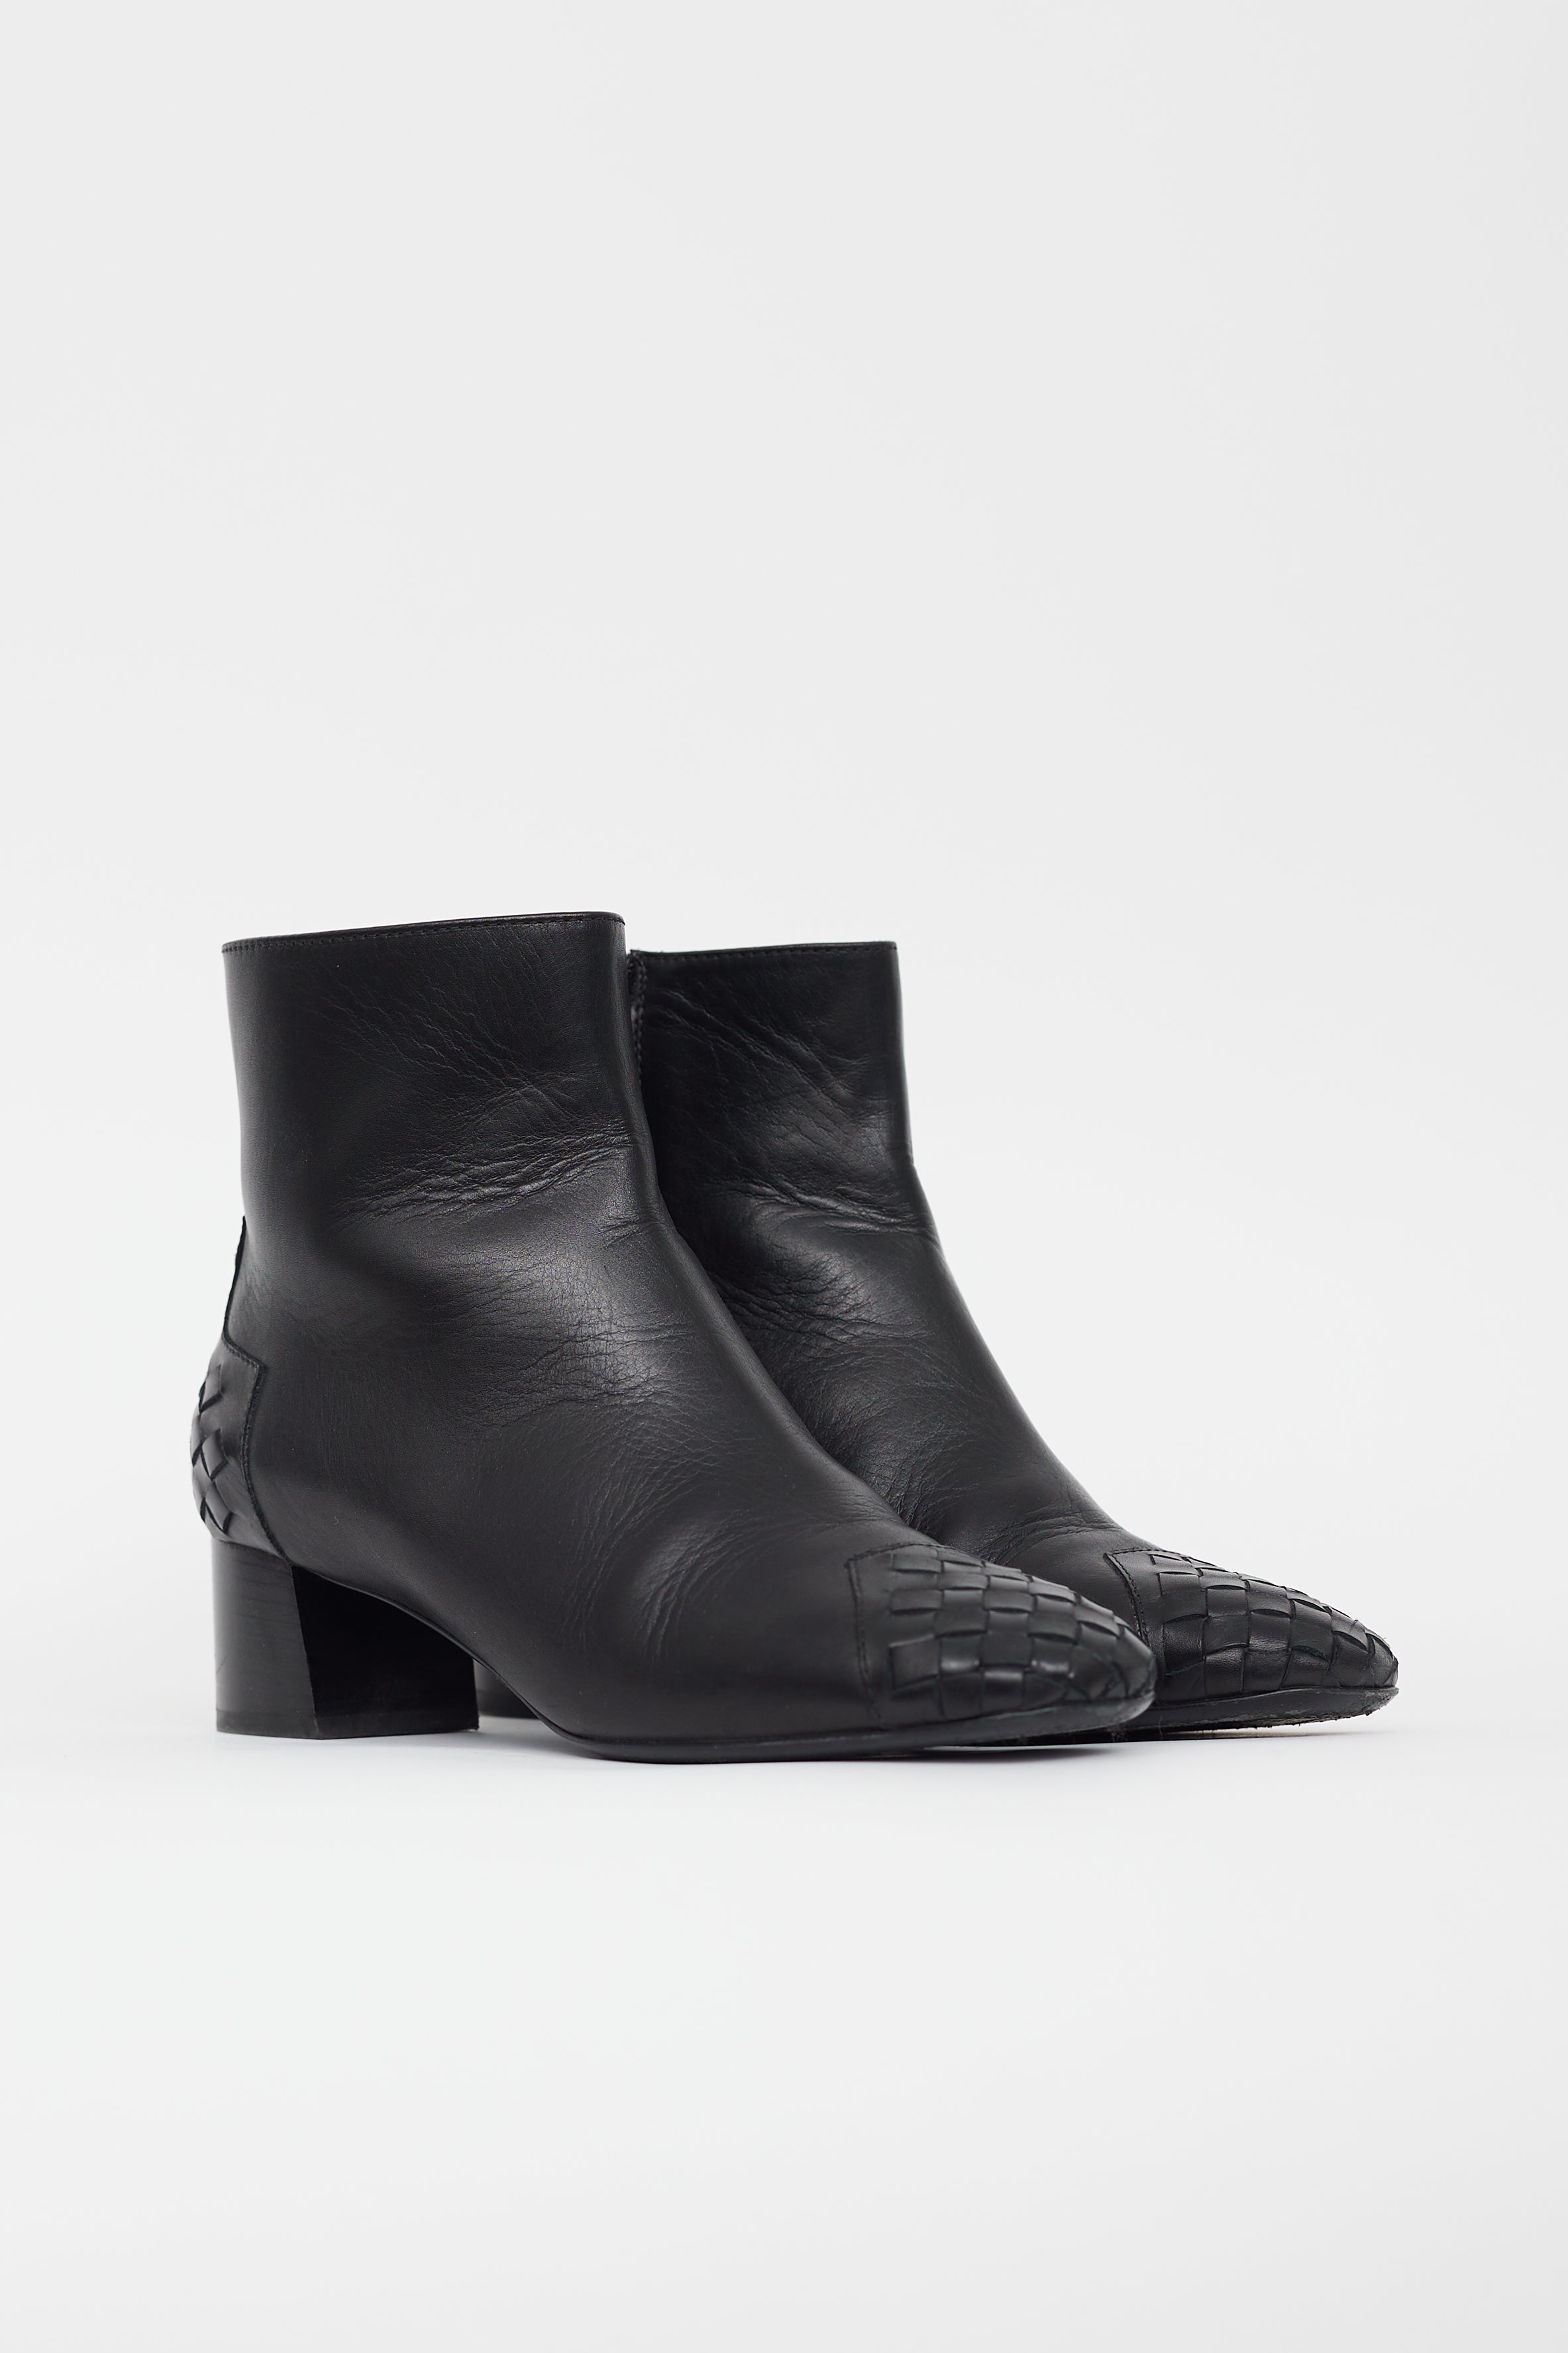 Bottega Veneta // Black Leather Intrecciato Ankle Boot – VSP